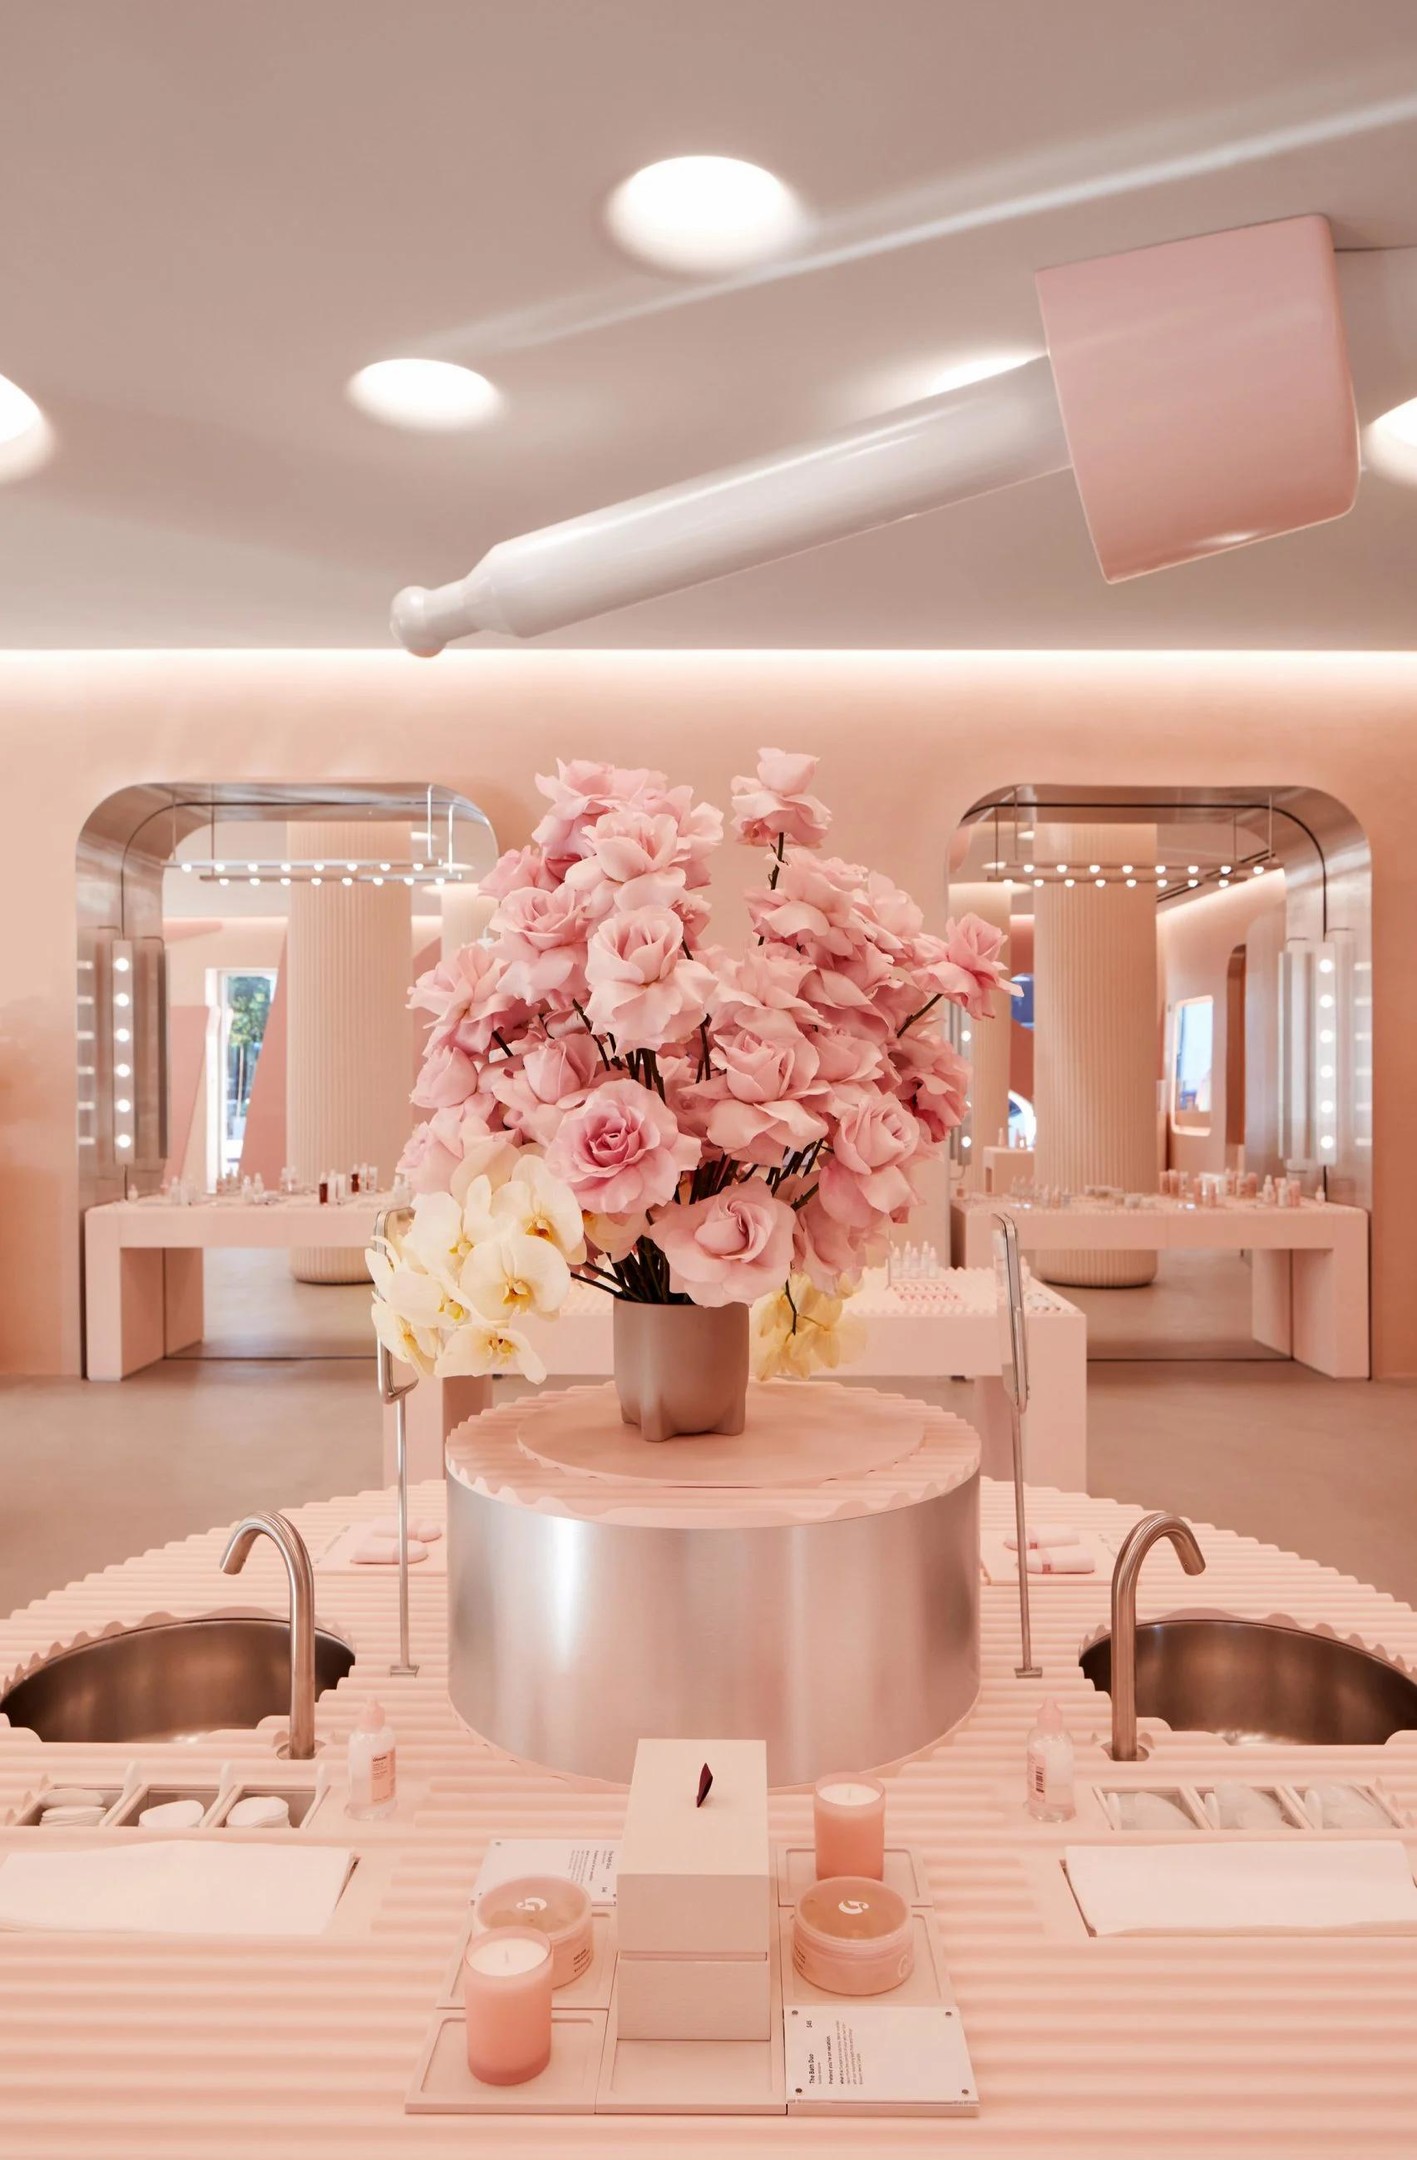 Khu vực dành riêng cho khách trải nghiệm trực tiếp các sản phẩm của cửa hàng. Chính giữa là lọ hoa sắc hồng điệu đà, xung quanh là bồn rửa để khách có thể tẩy trang trước và sau khi trải nghiệm.